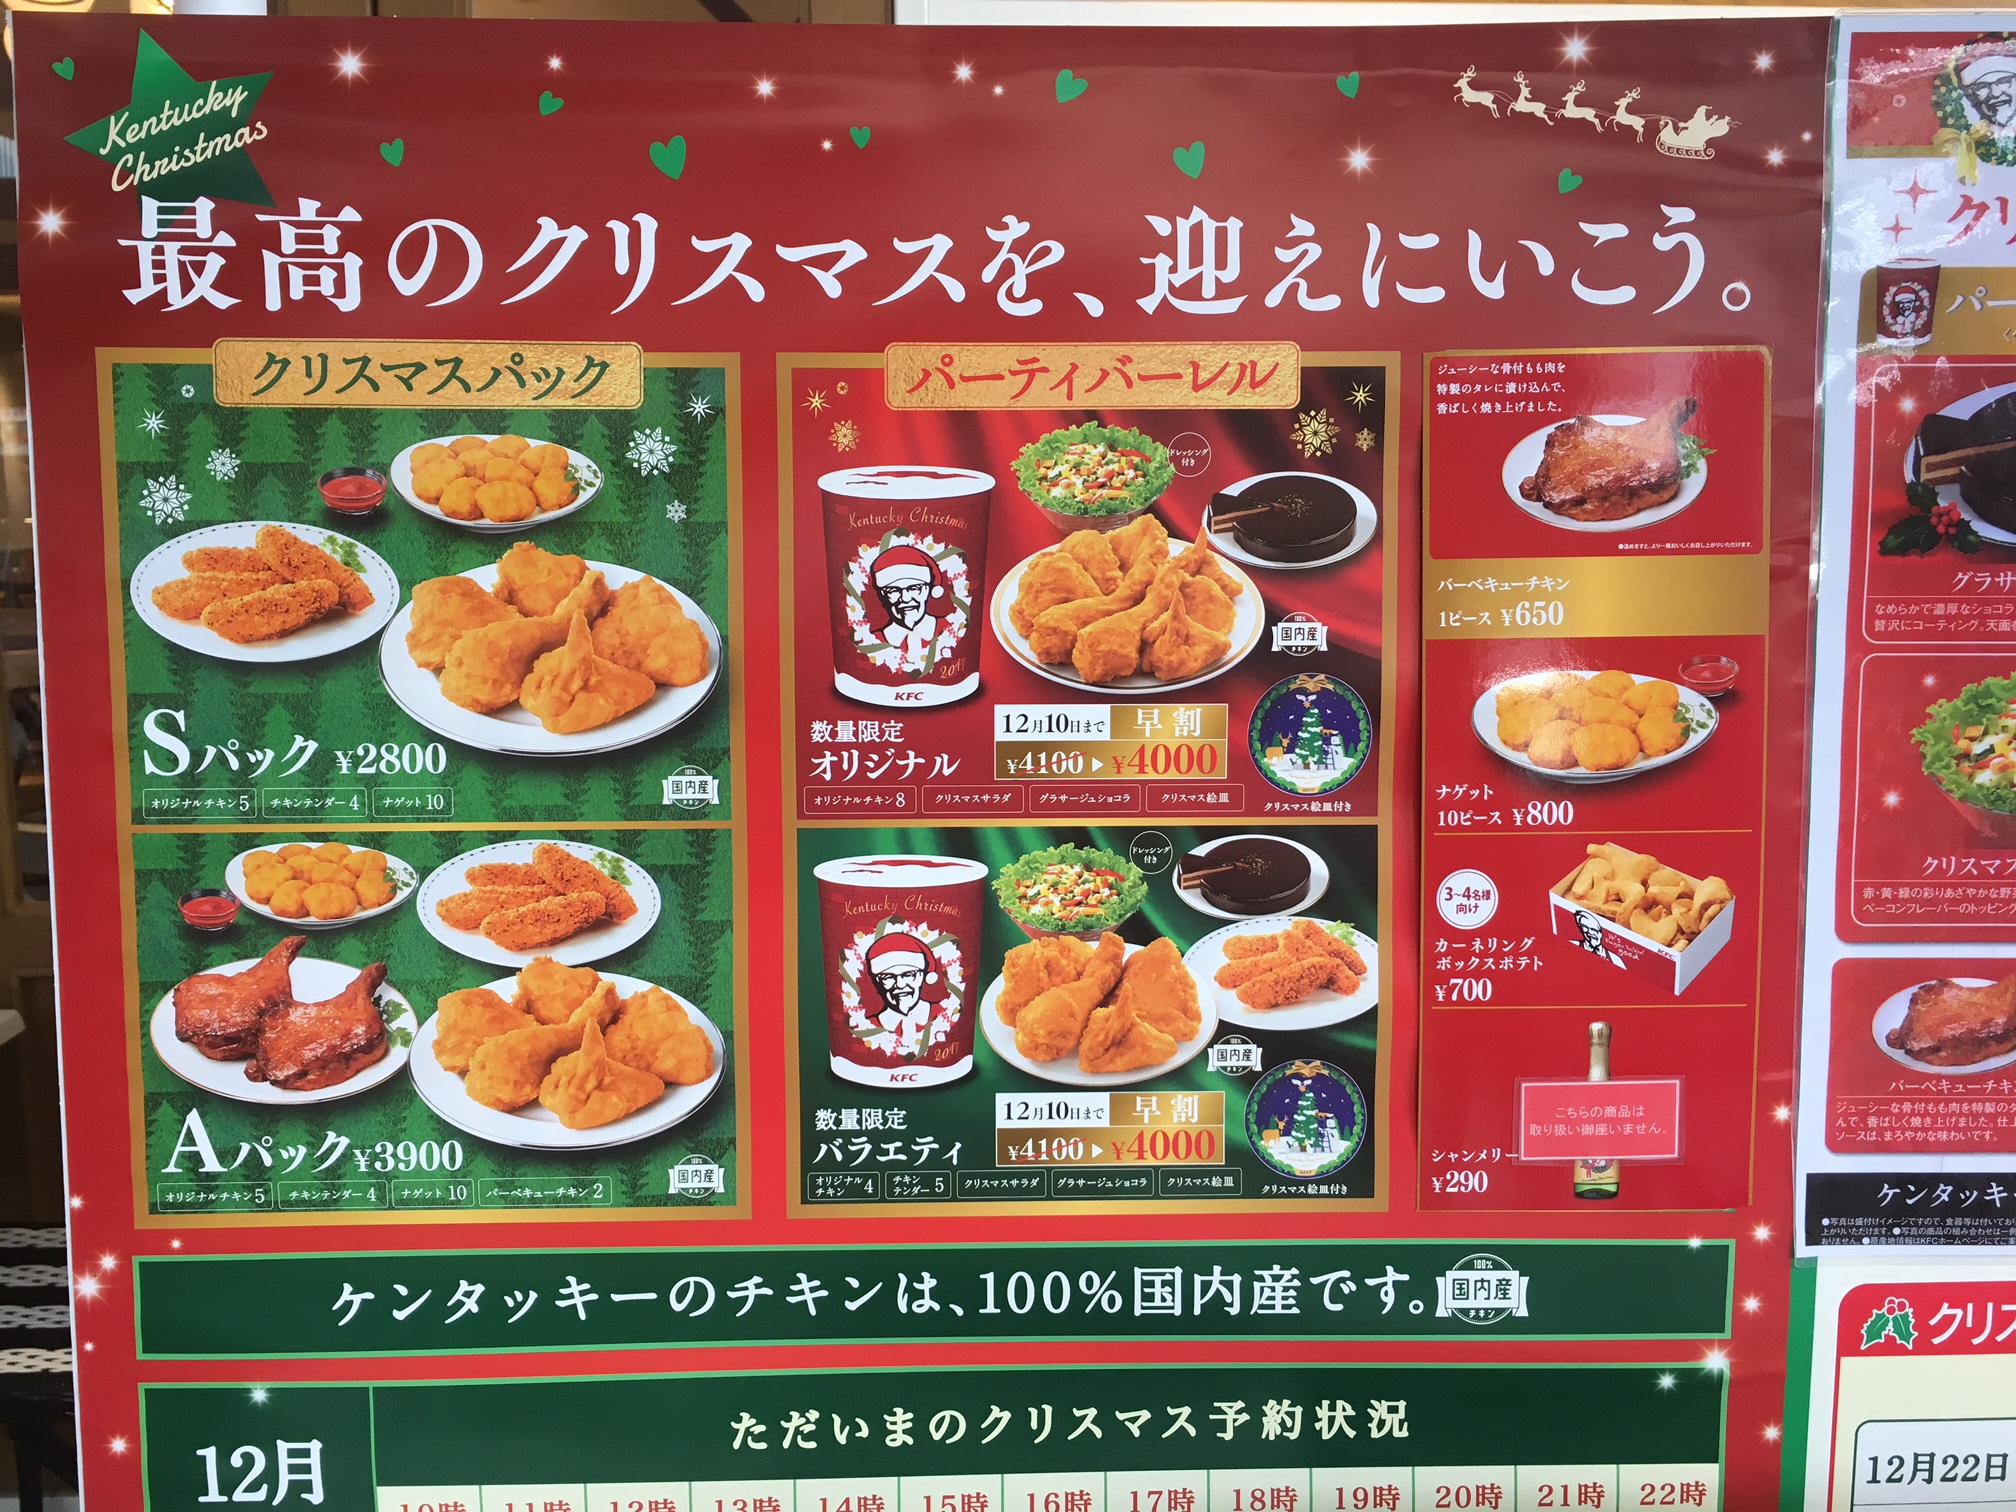 Why KFC Is Christmas Dinner In Japan